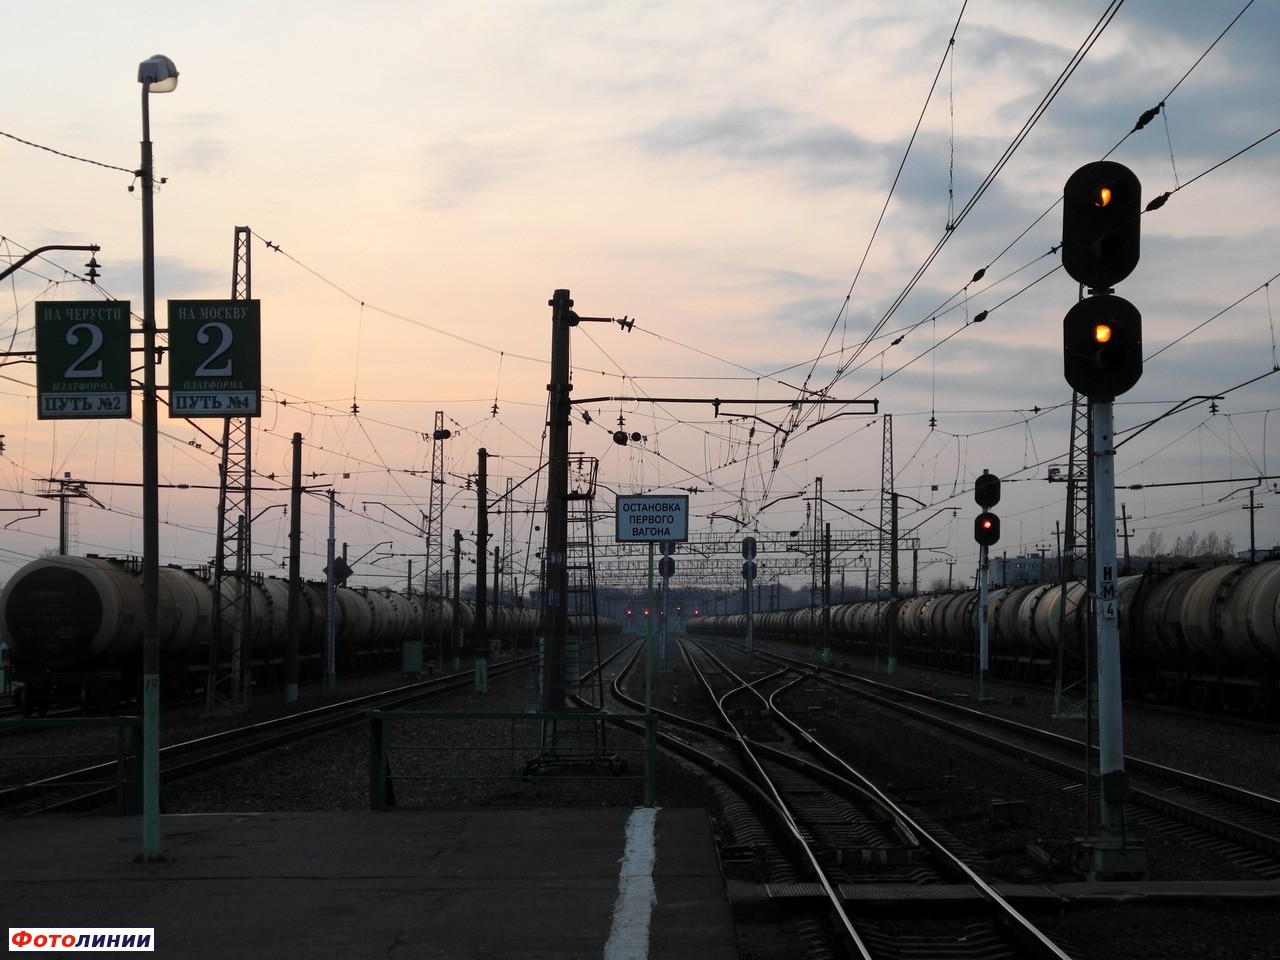 Маршрутные светофоры НМ4 и НМ1. Вид в направлении Москвы